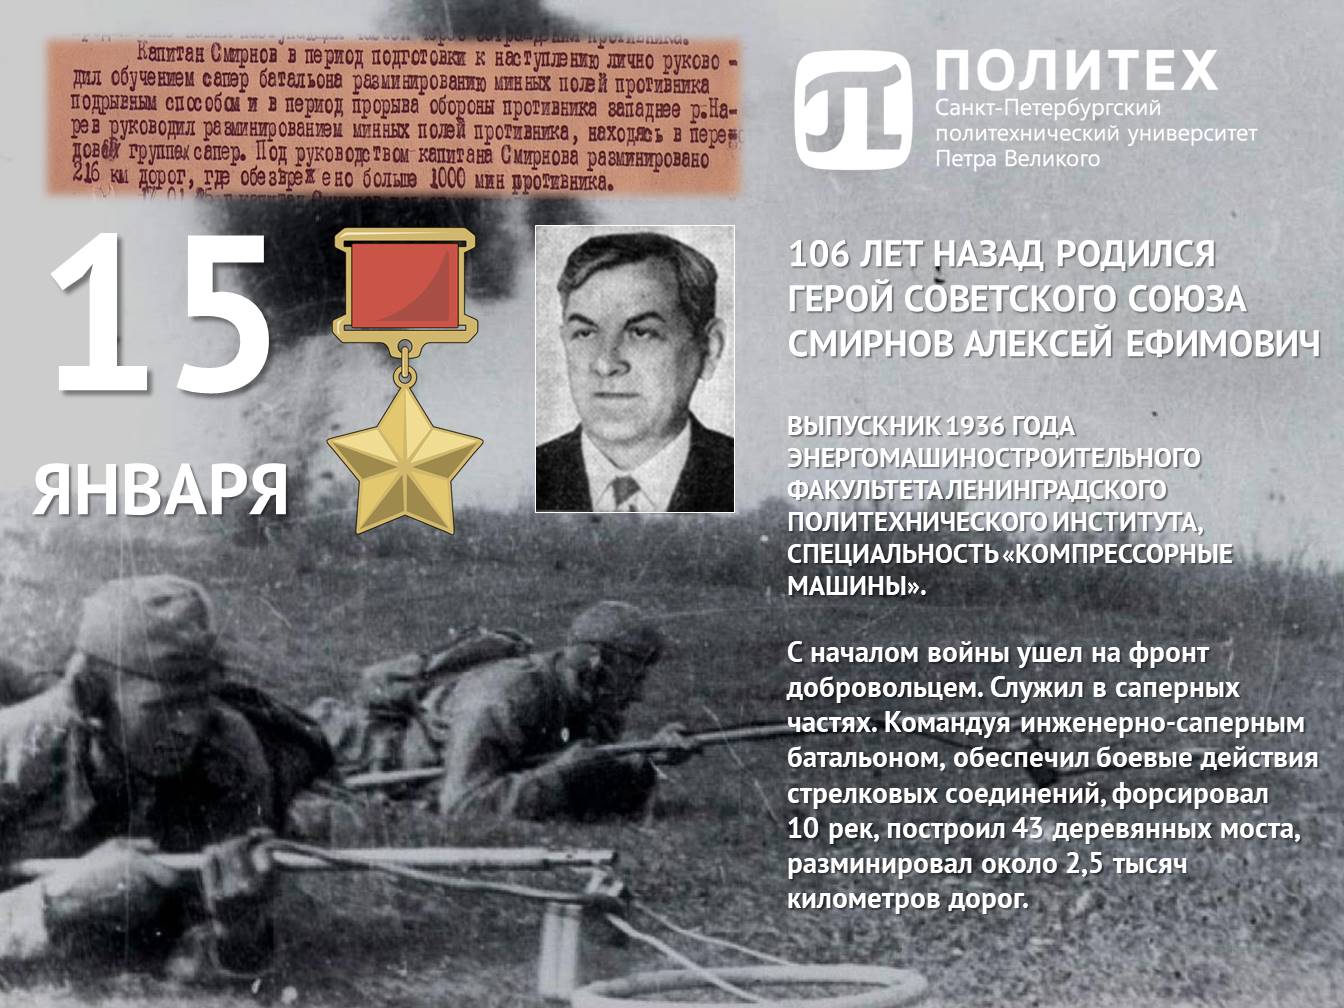 106 лет назад родился политехник Герой Советского союза Смирнов Алексей Ефимович